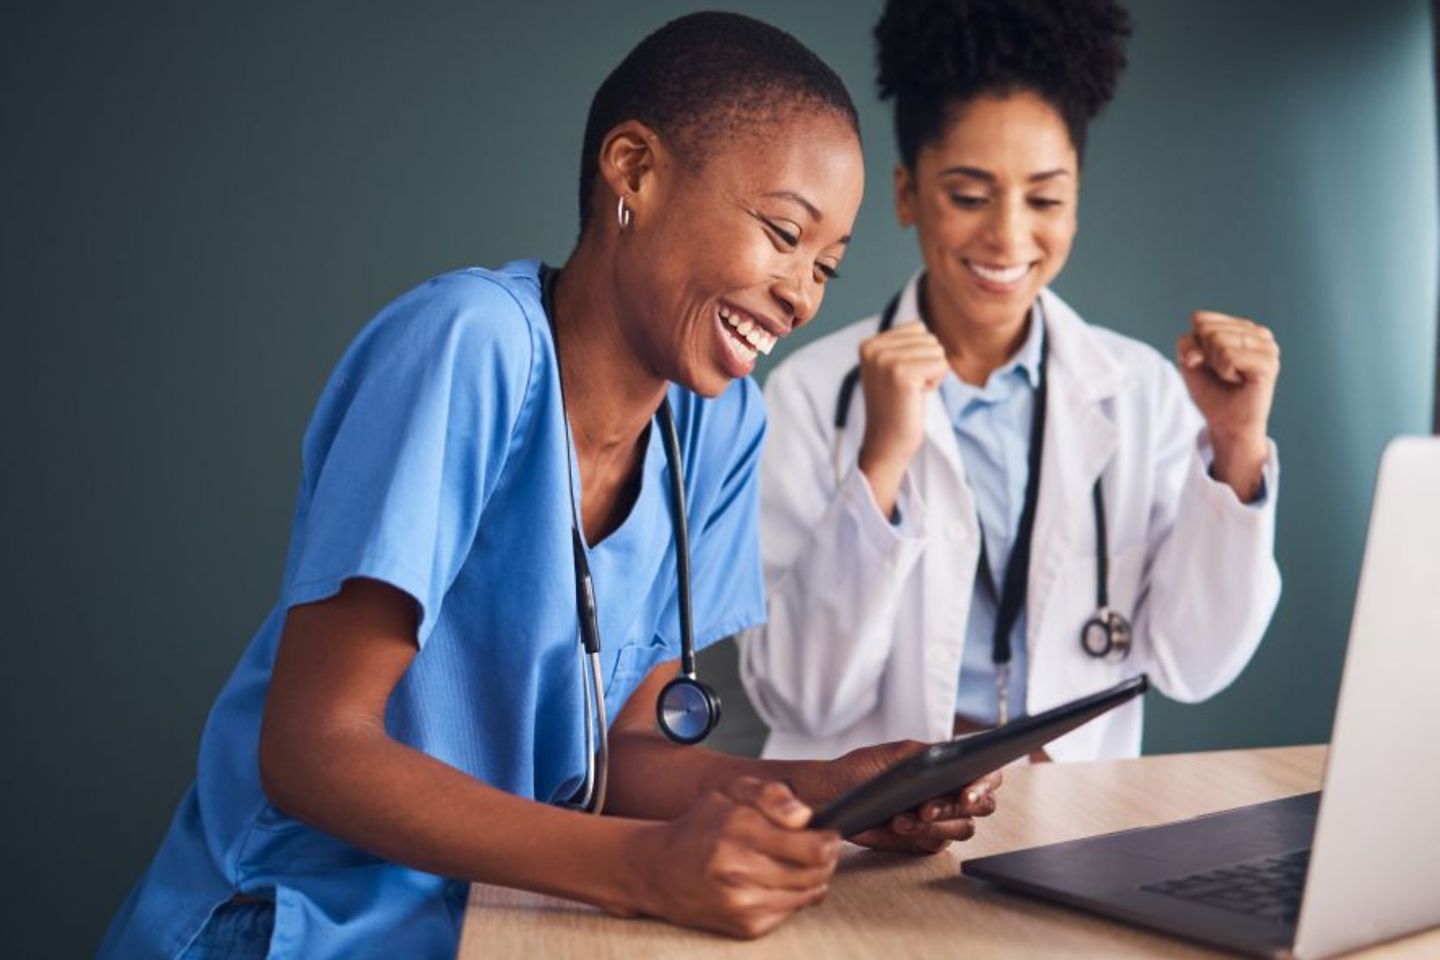 Médicas e enfermeiras, diante de um tablet e um laptop, comemoram uma história de sucesso na área da saúde